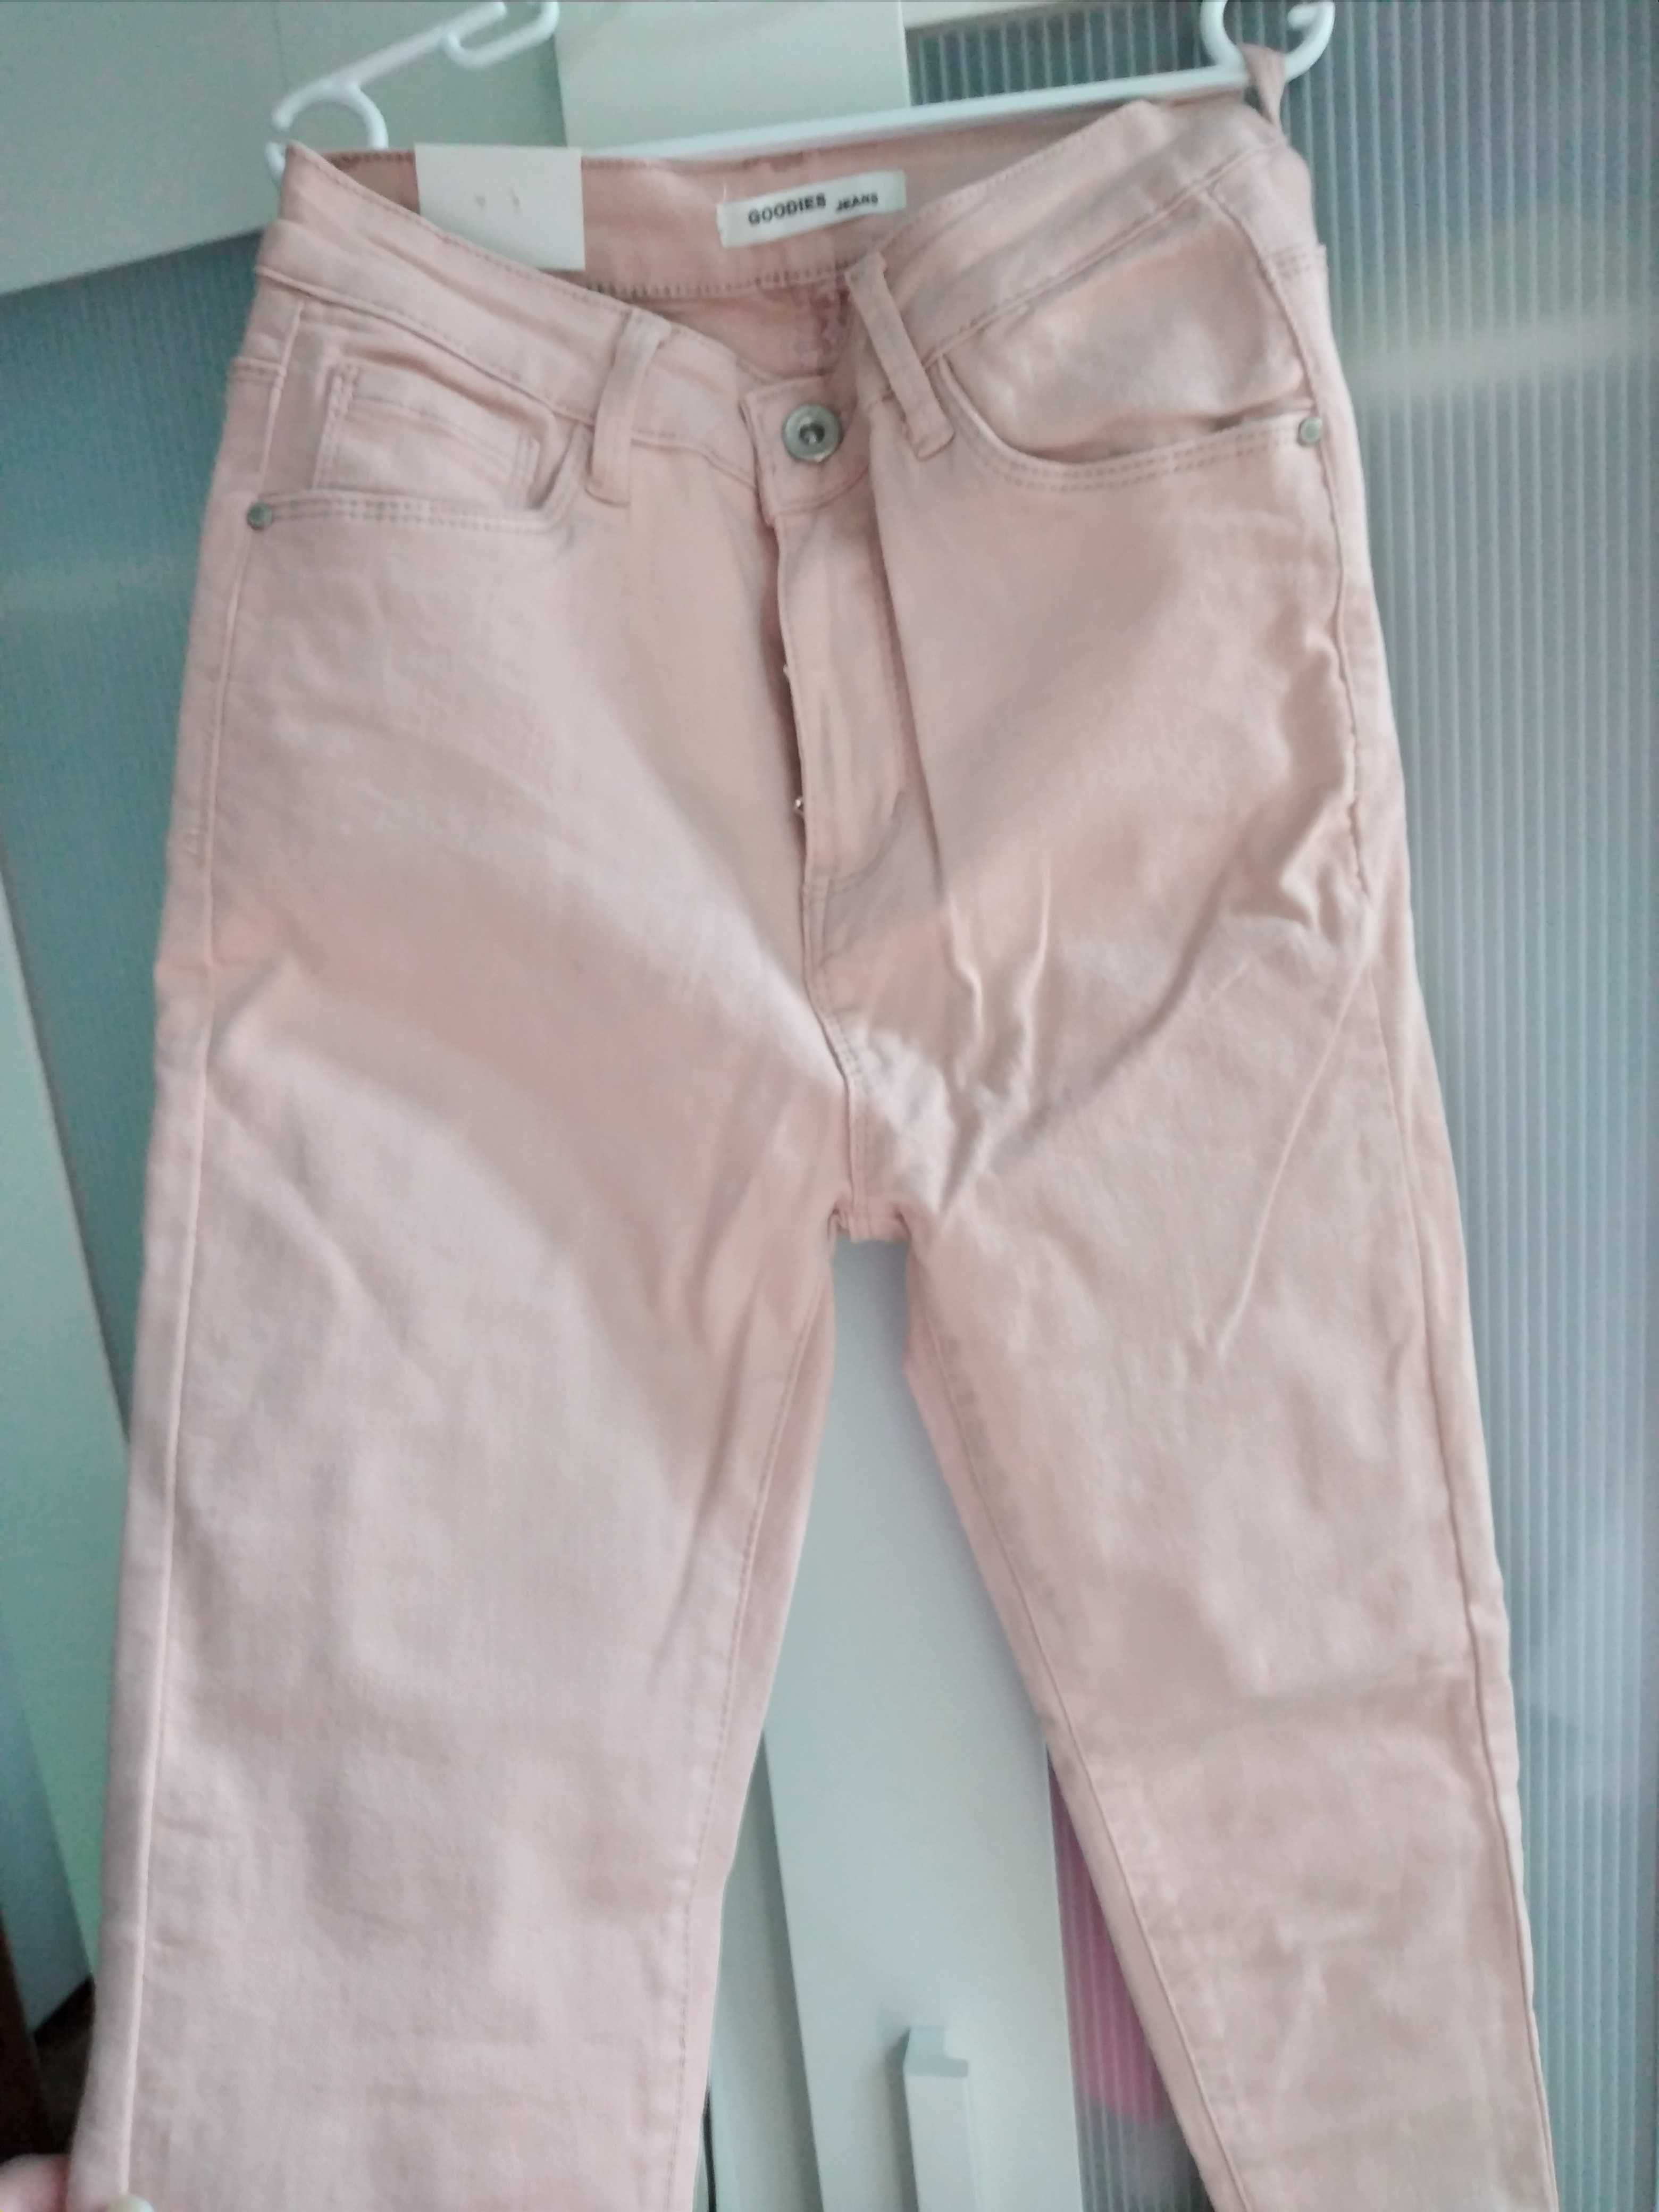 Spodnie jeans damskie S róż nowe 1zl